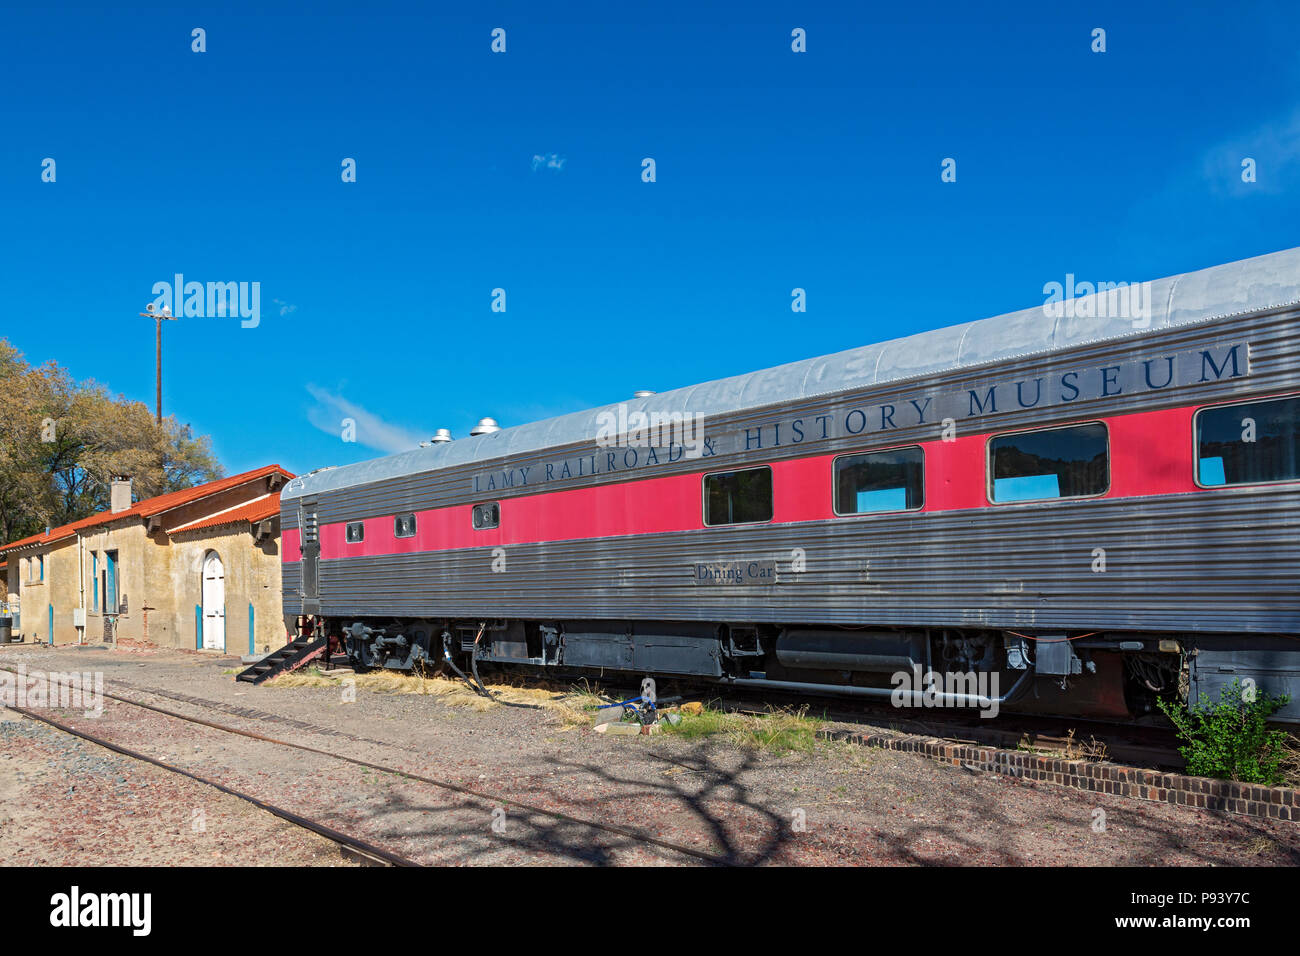 New Mexico, Santa Fe County, Lamy Railroad & History Museum Stock Photo